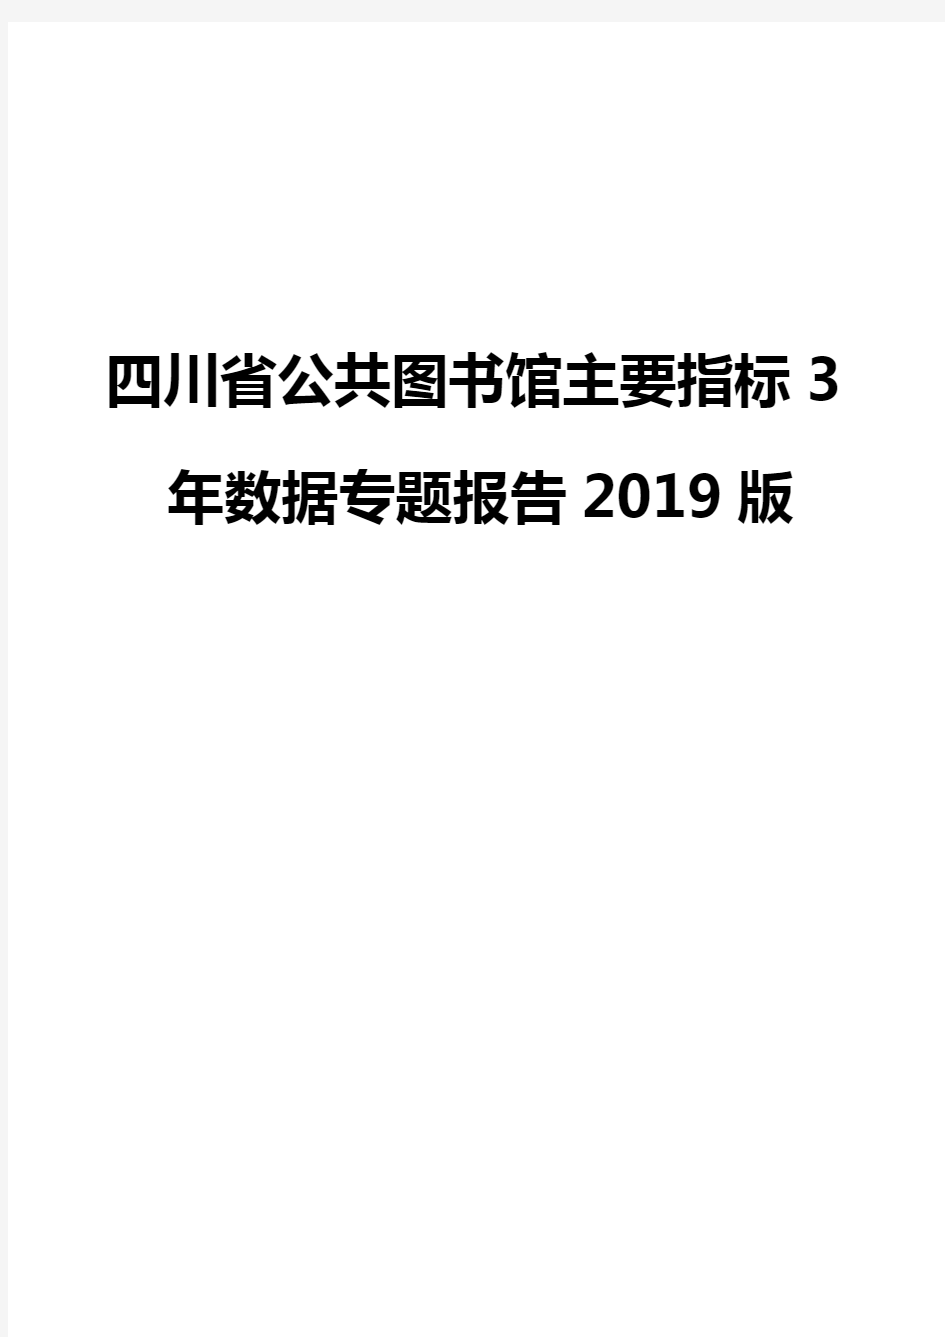 四川省公共图书馆主要指标3年数据专题报告2019版